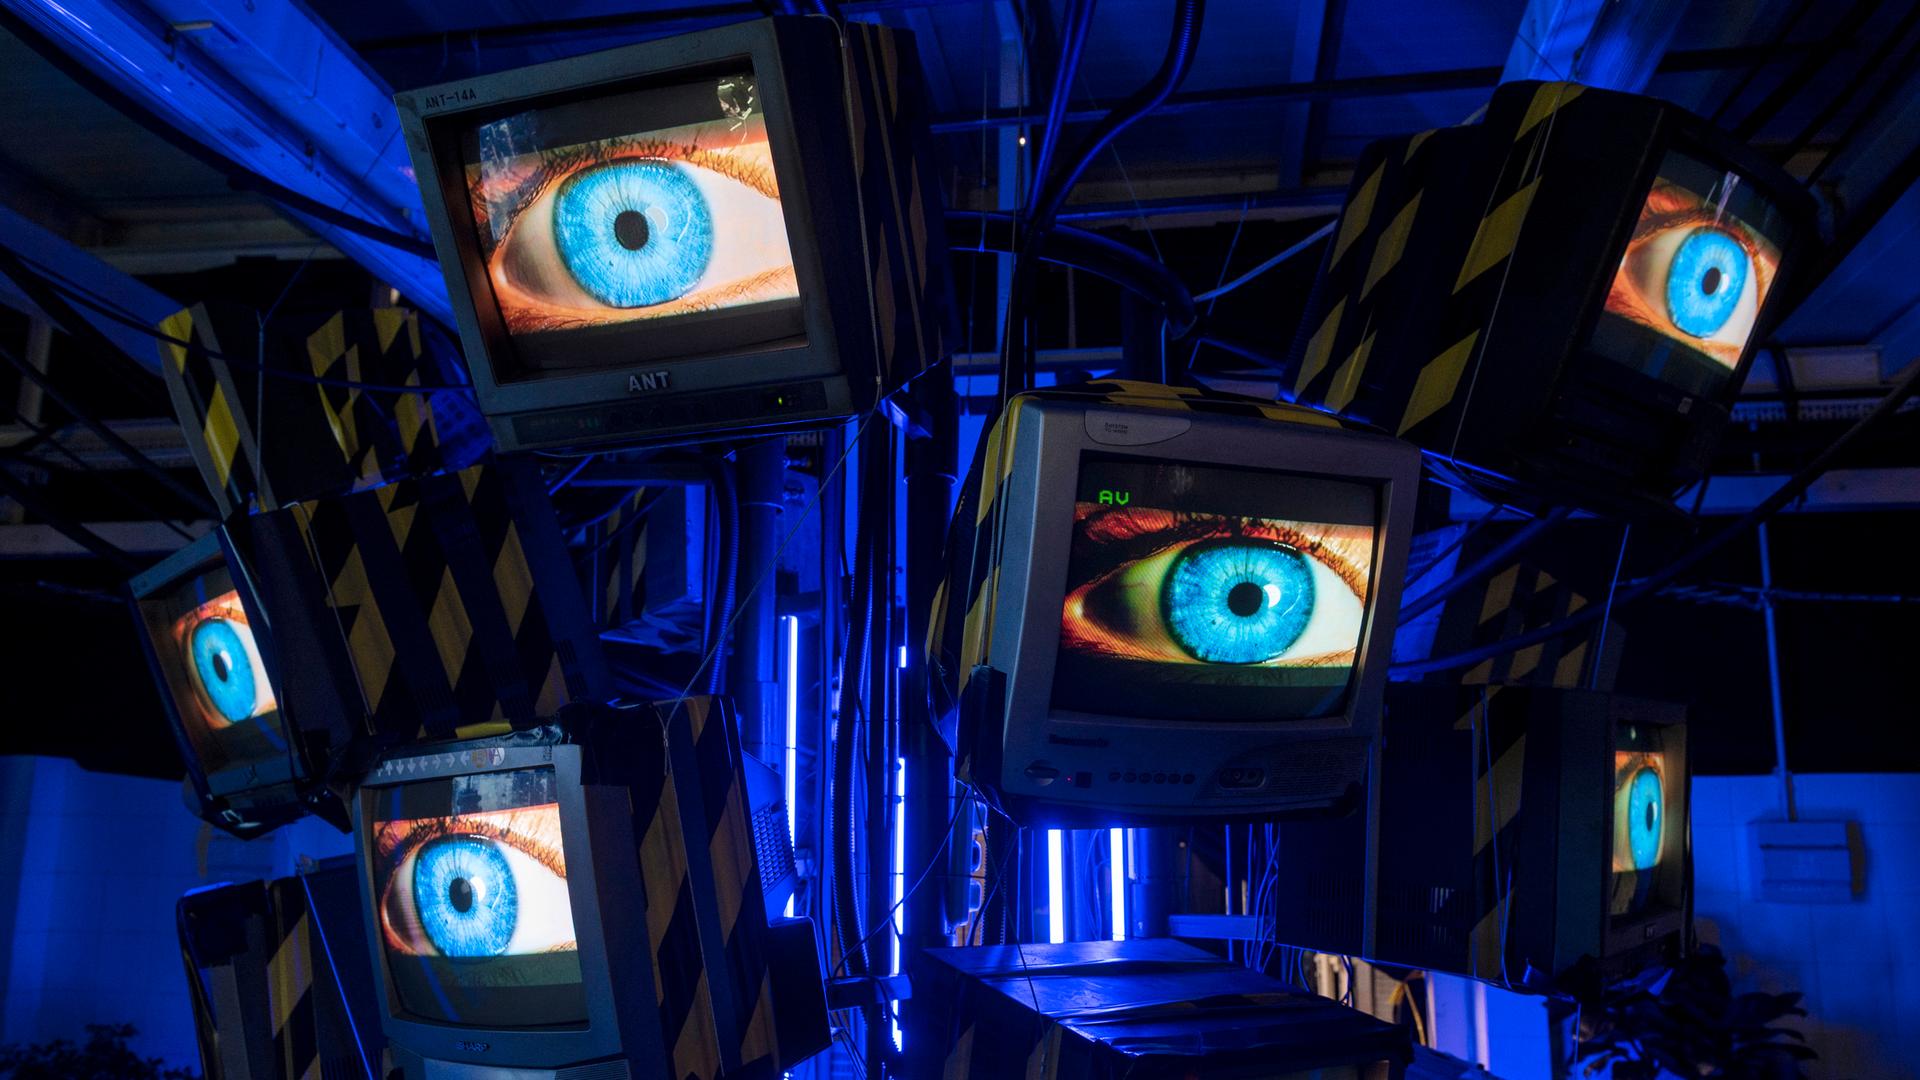 Eine Installation von acht Fernsehbildschirmen, die in einem Halbkreis angeordnet sind, zeigen jeweils die gleiche Nahaufnahme eines menschlichen Auges mit einer blauen Iris.